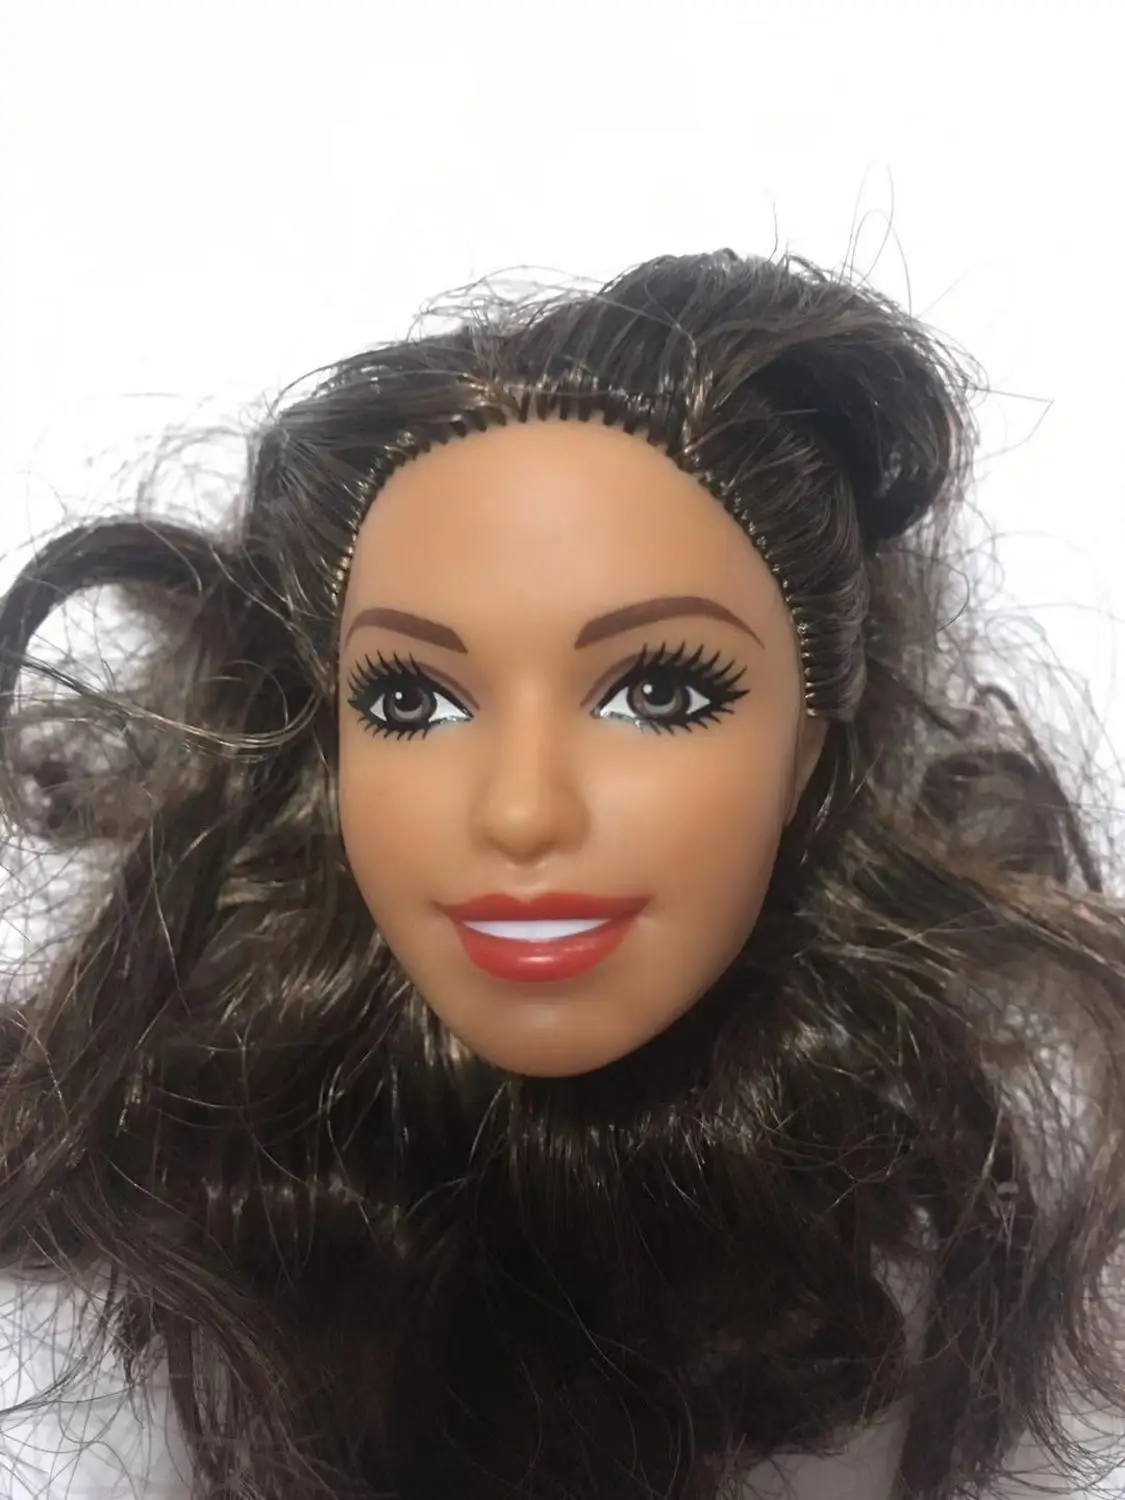 Редкое лицо голова куклы Азия лицо кукла аксессуары принцесса игрушка голова 1/6 Мода части куклы Черный Фиолетовый волосы кукла голова части - Цвет: as pics